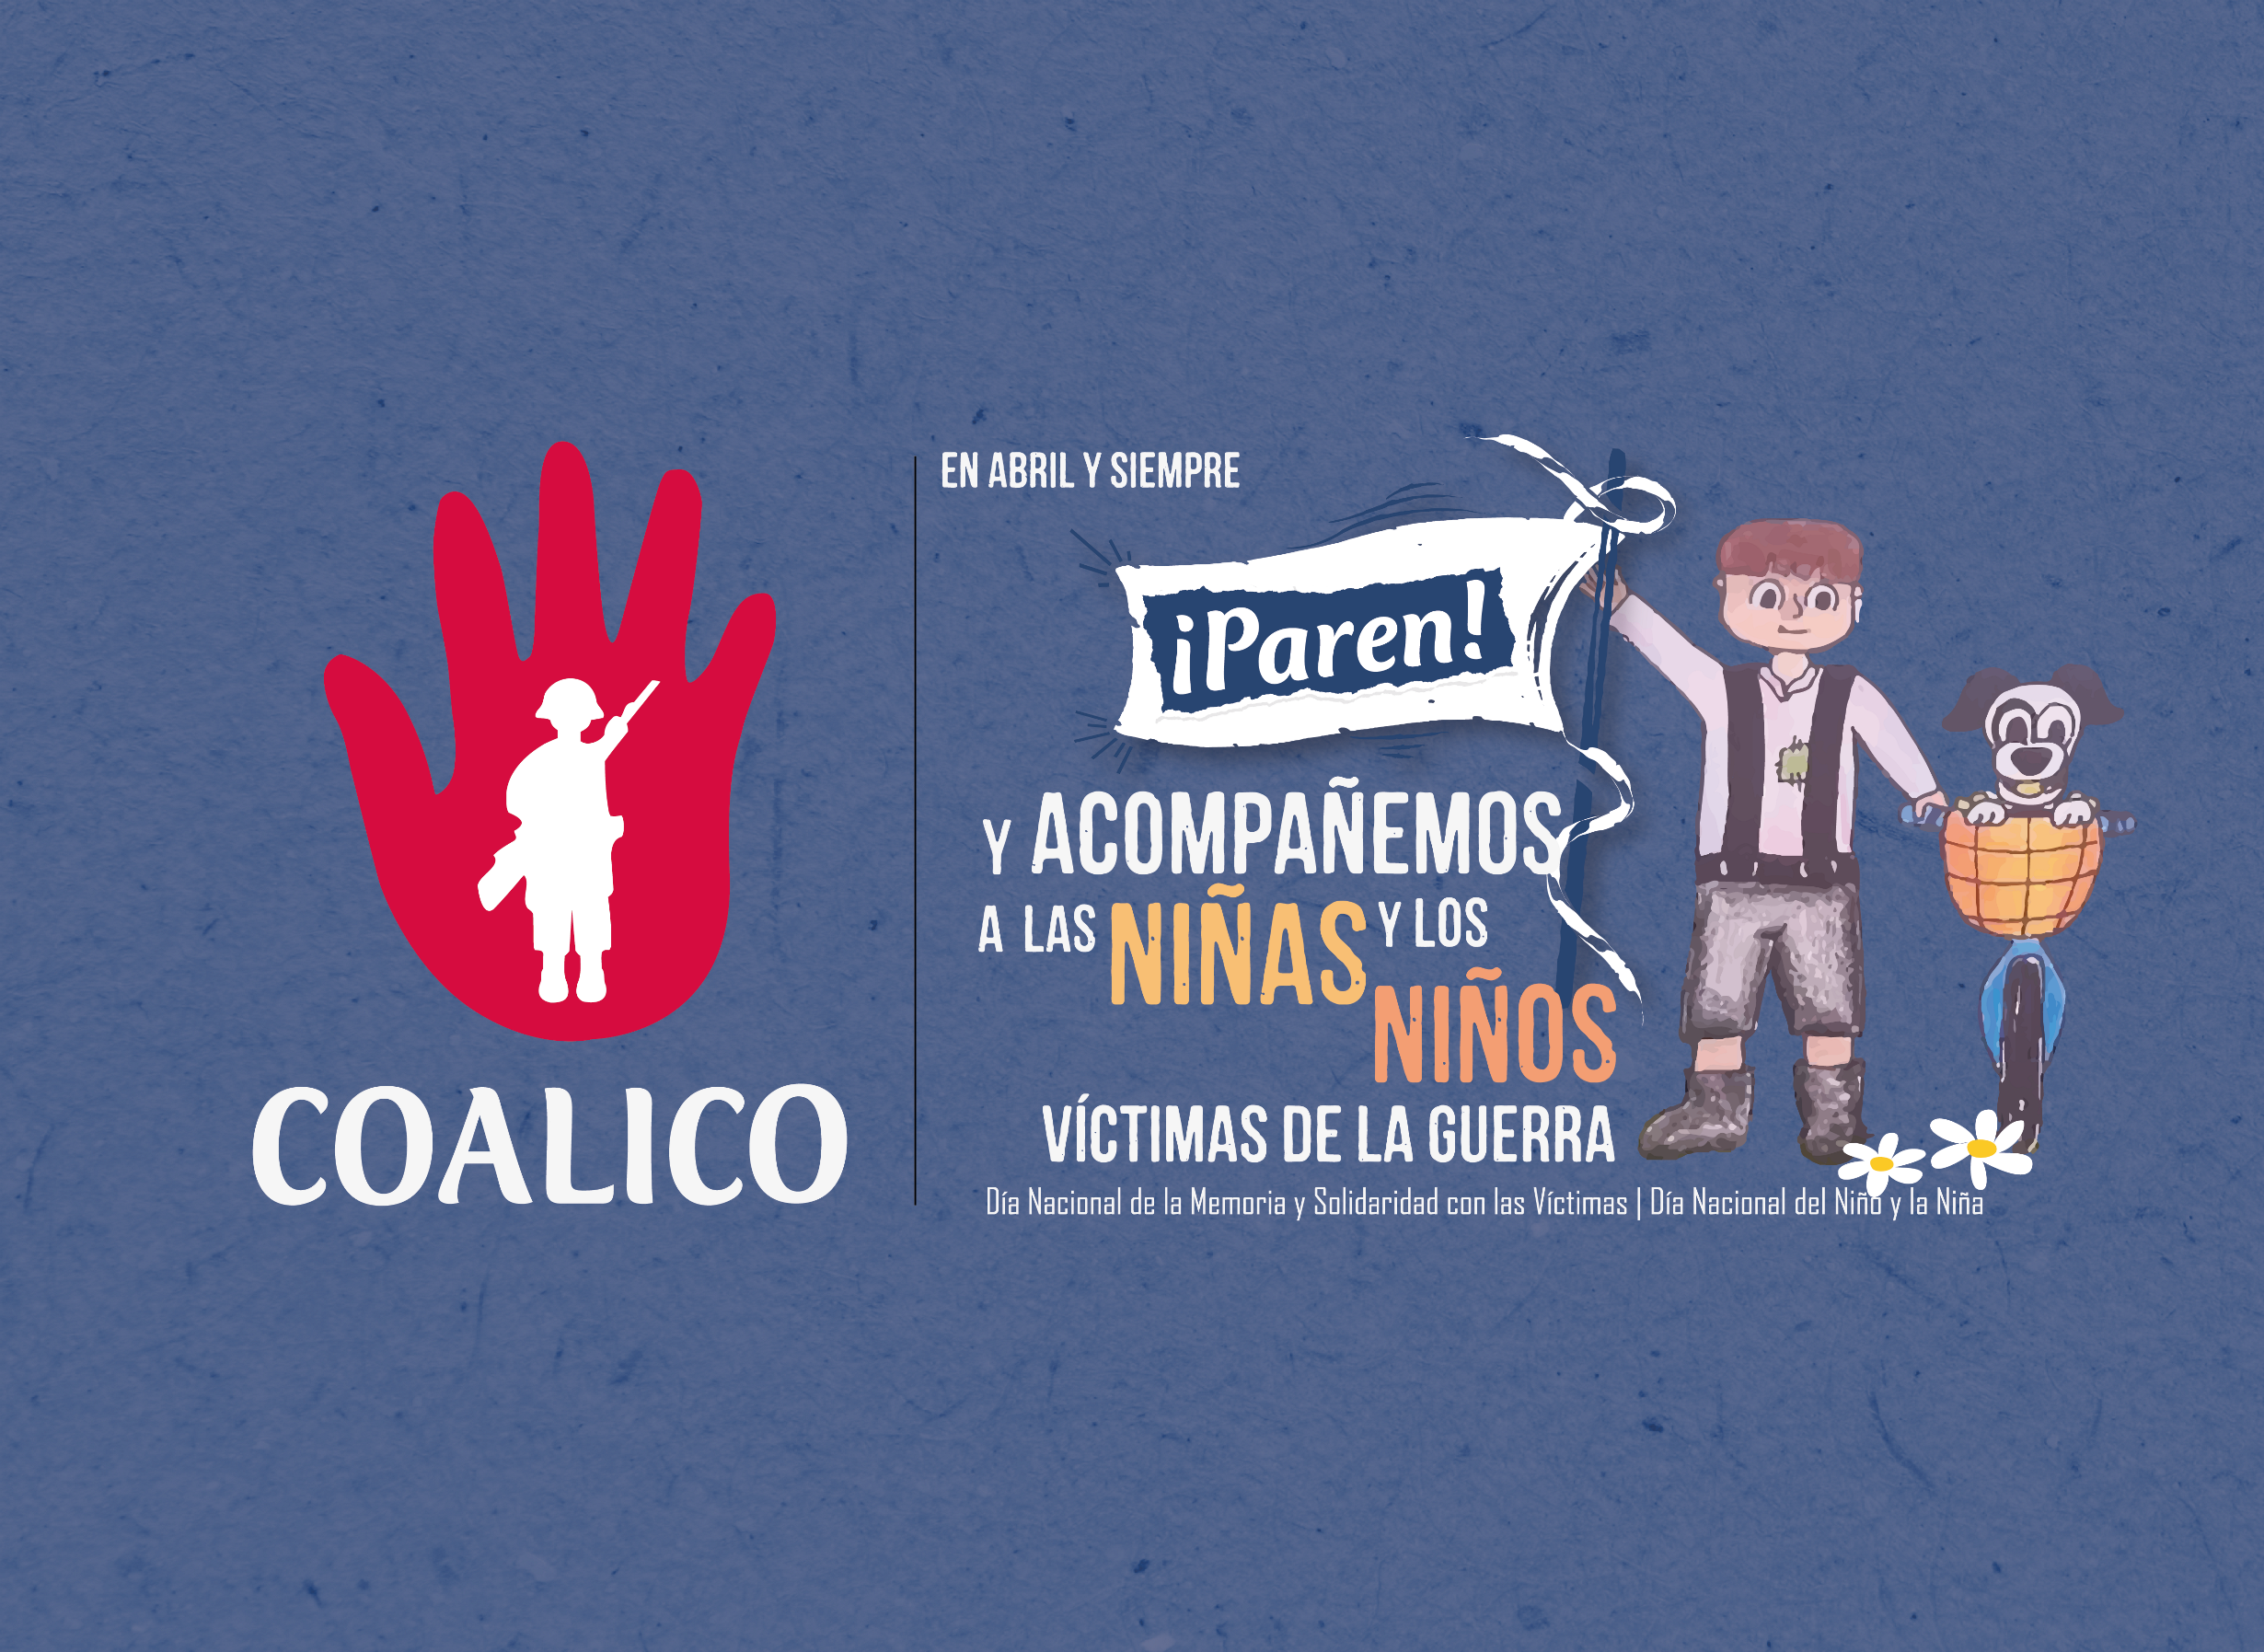 COMUNICADO PÚBLICO: LAS NIÑAS, NIÑOS Y ADOLESCENTES HAN SIDO Y SON VÍCTIMAS DEL CONFLICTO ARMADO EN COLOMBIA